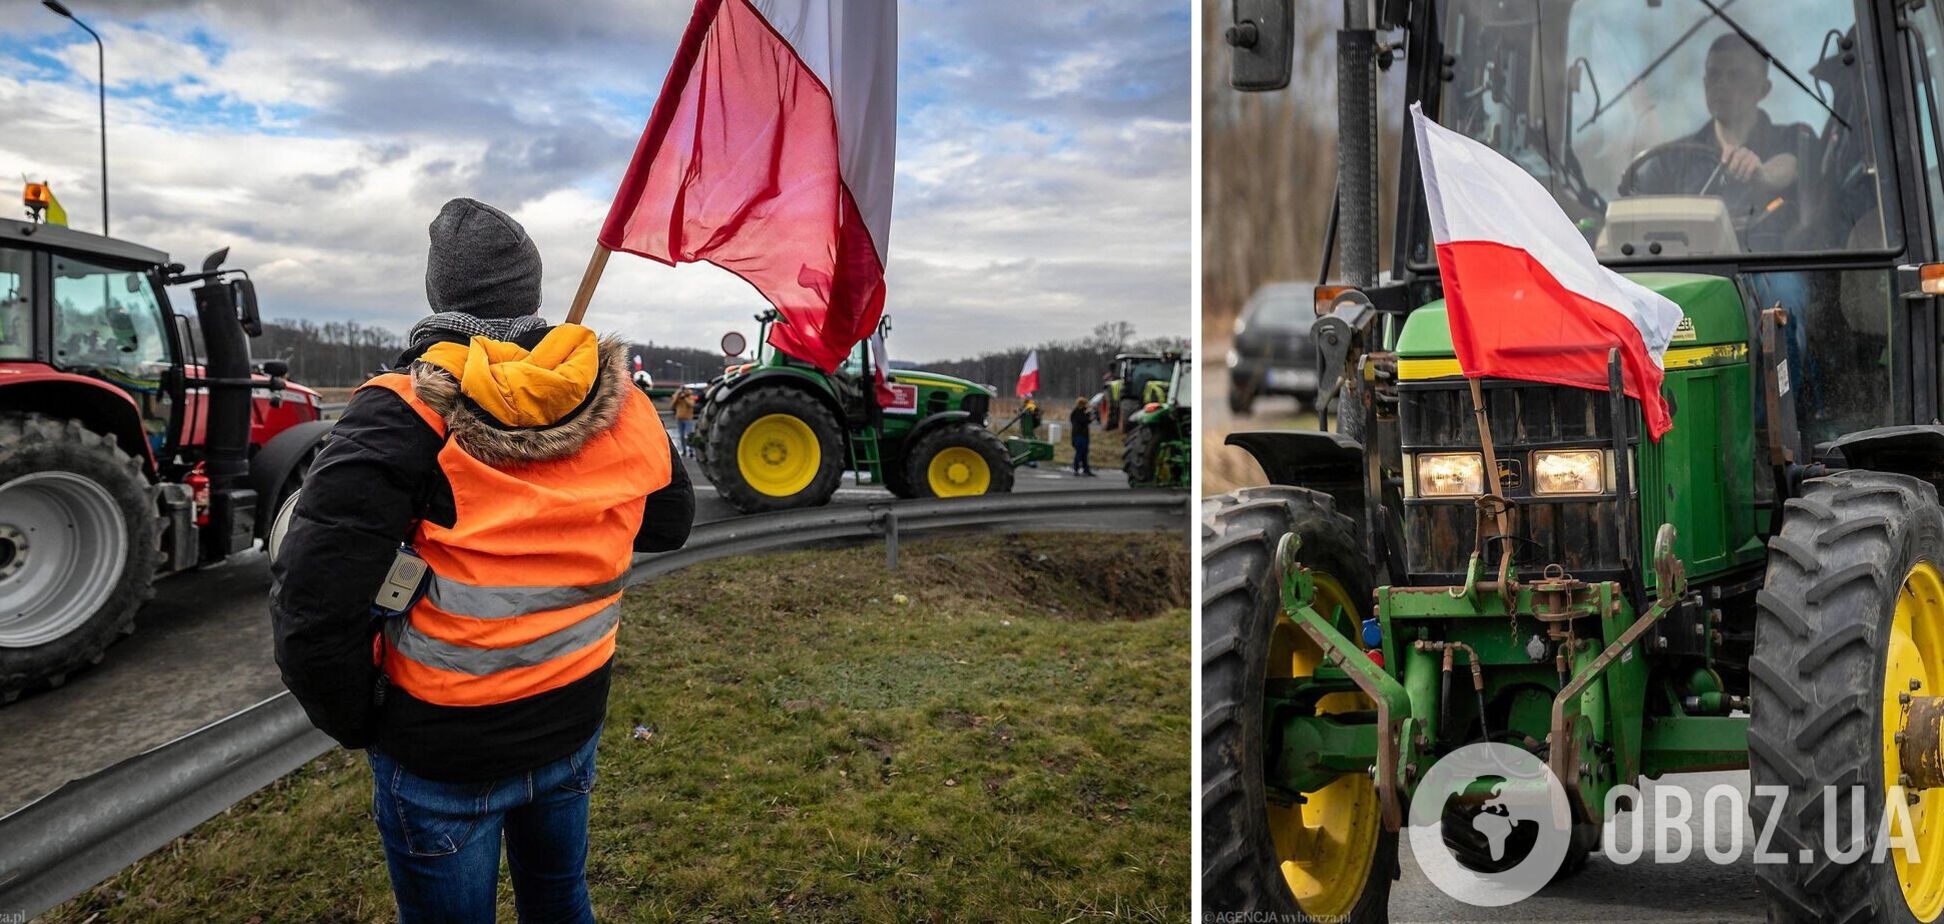 Блокада поляками границы Украины продолжается